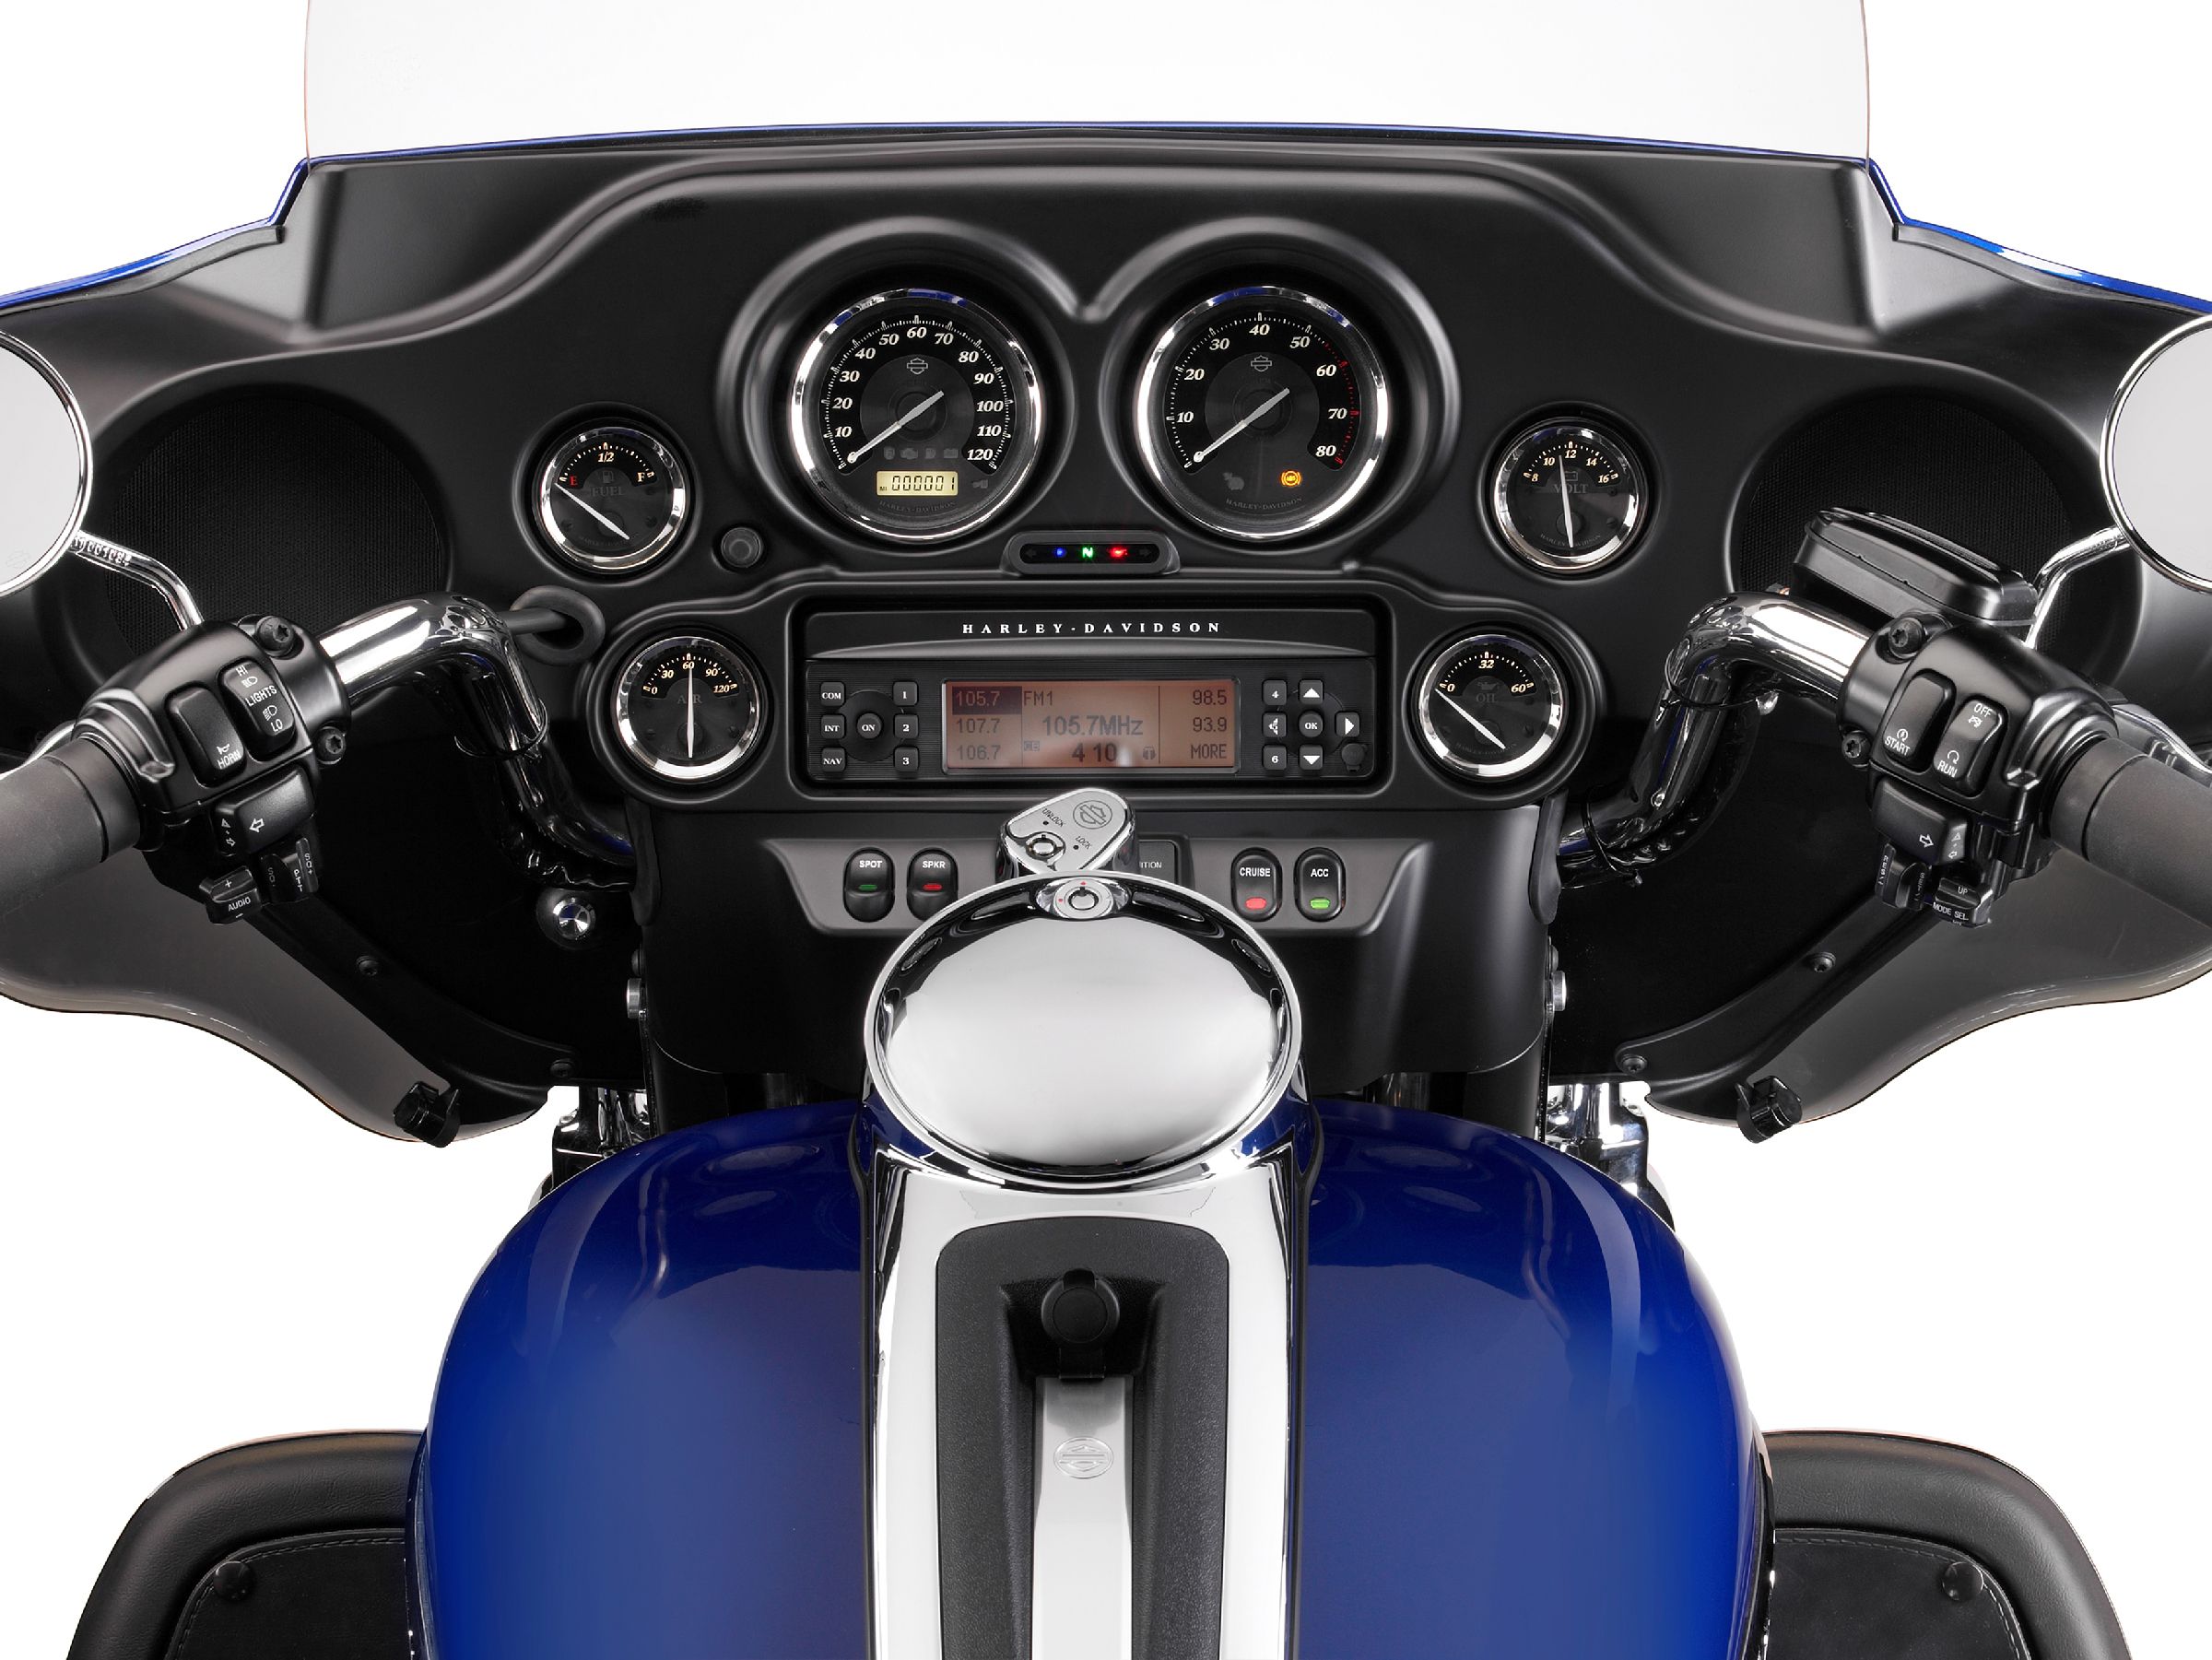  2010 Harley-Davidson FLHTK Electra Glide Ultra Limited